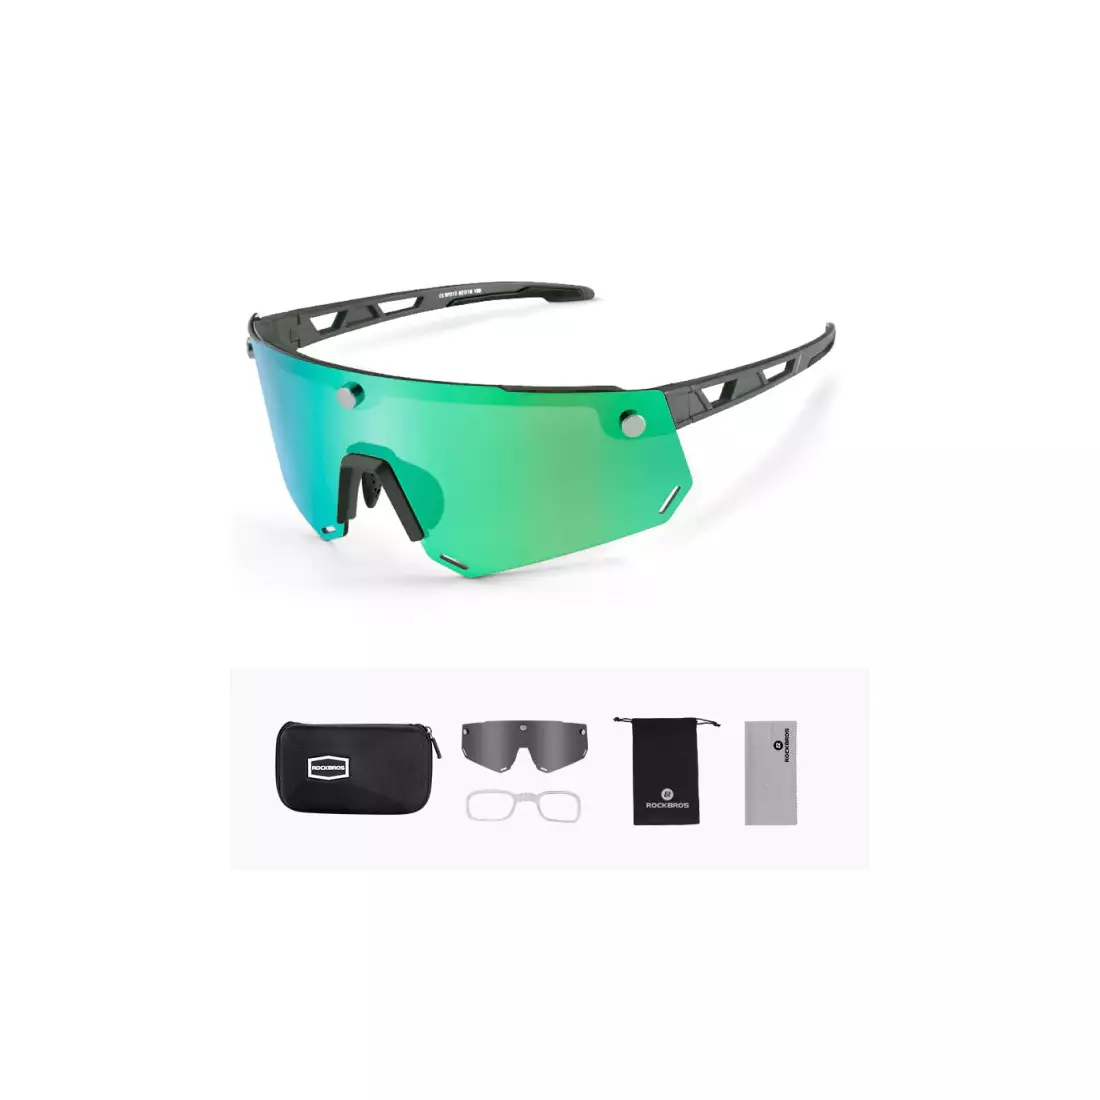 Rockbros SP213GY Fahrrad / Sportbrille mit polarisiertem schwarz